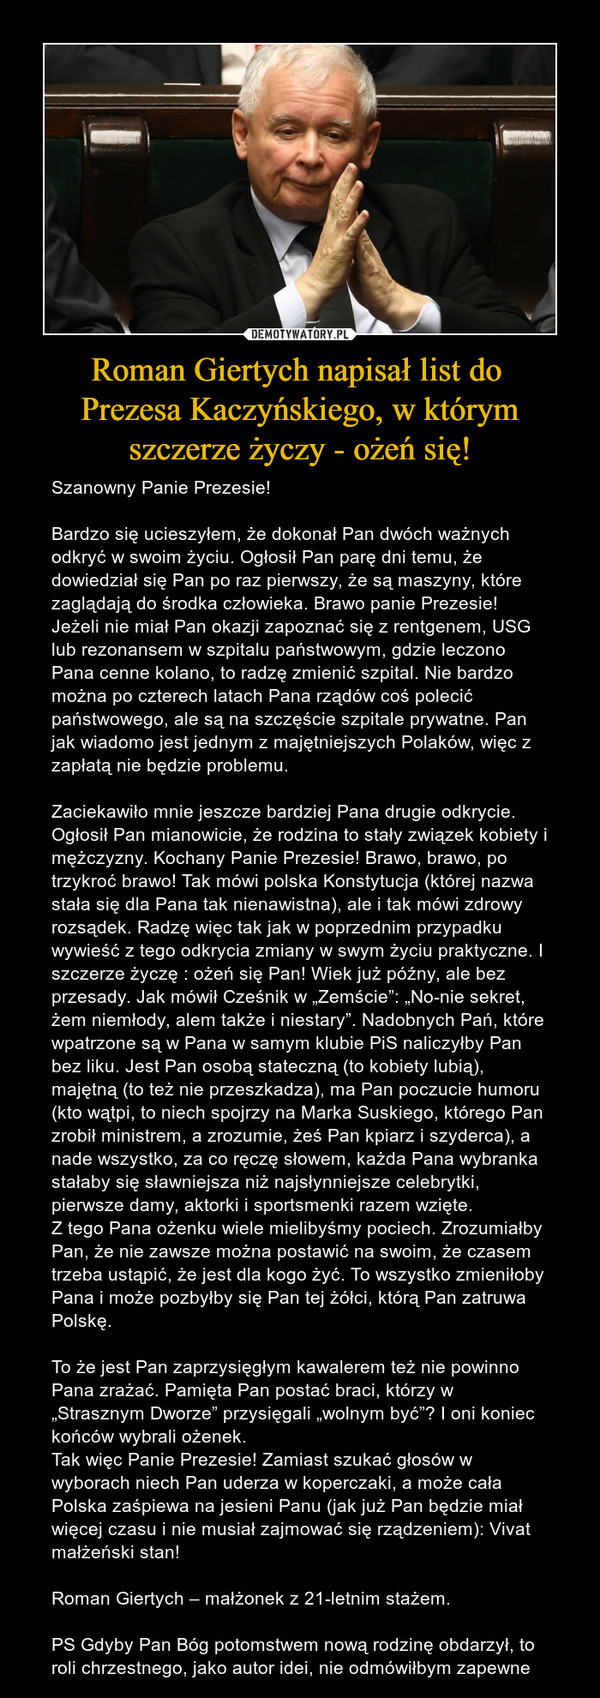 Roman Giertych napisał list do 
Prezesa Kaczyńskiego, w którym
szczerze życzy - ożeń się!